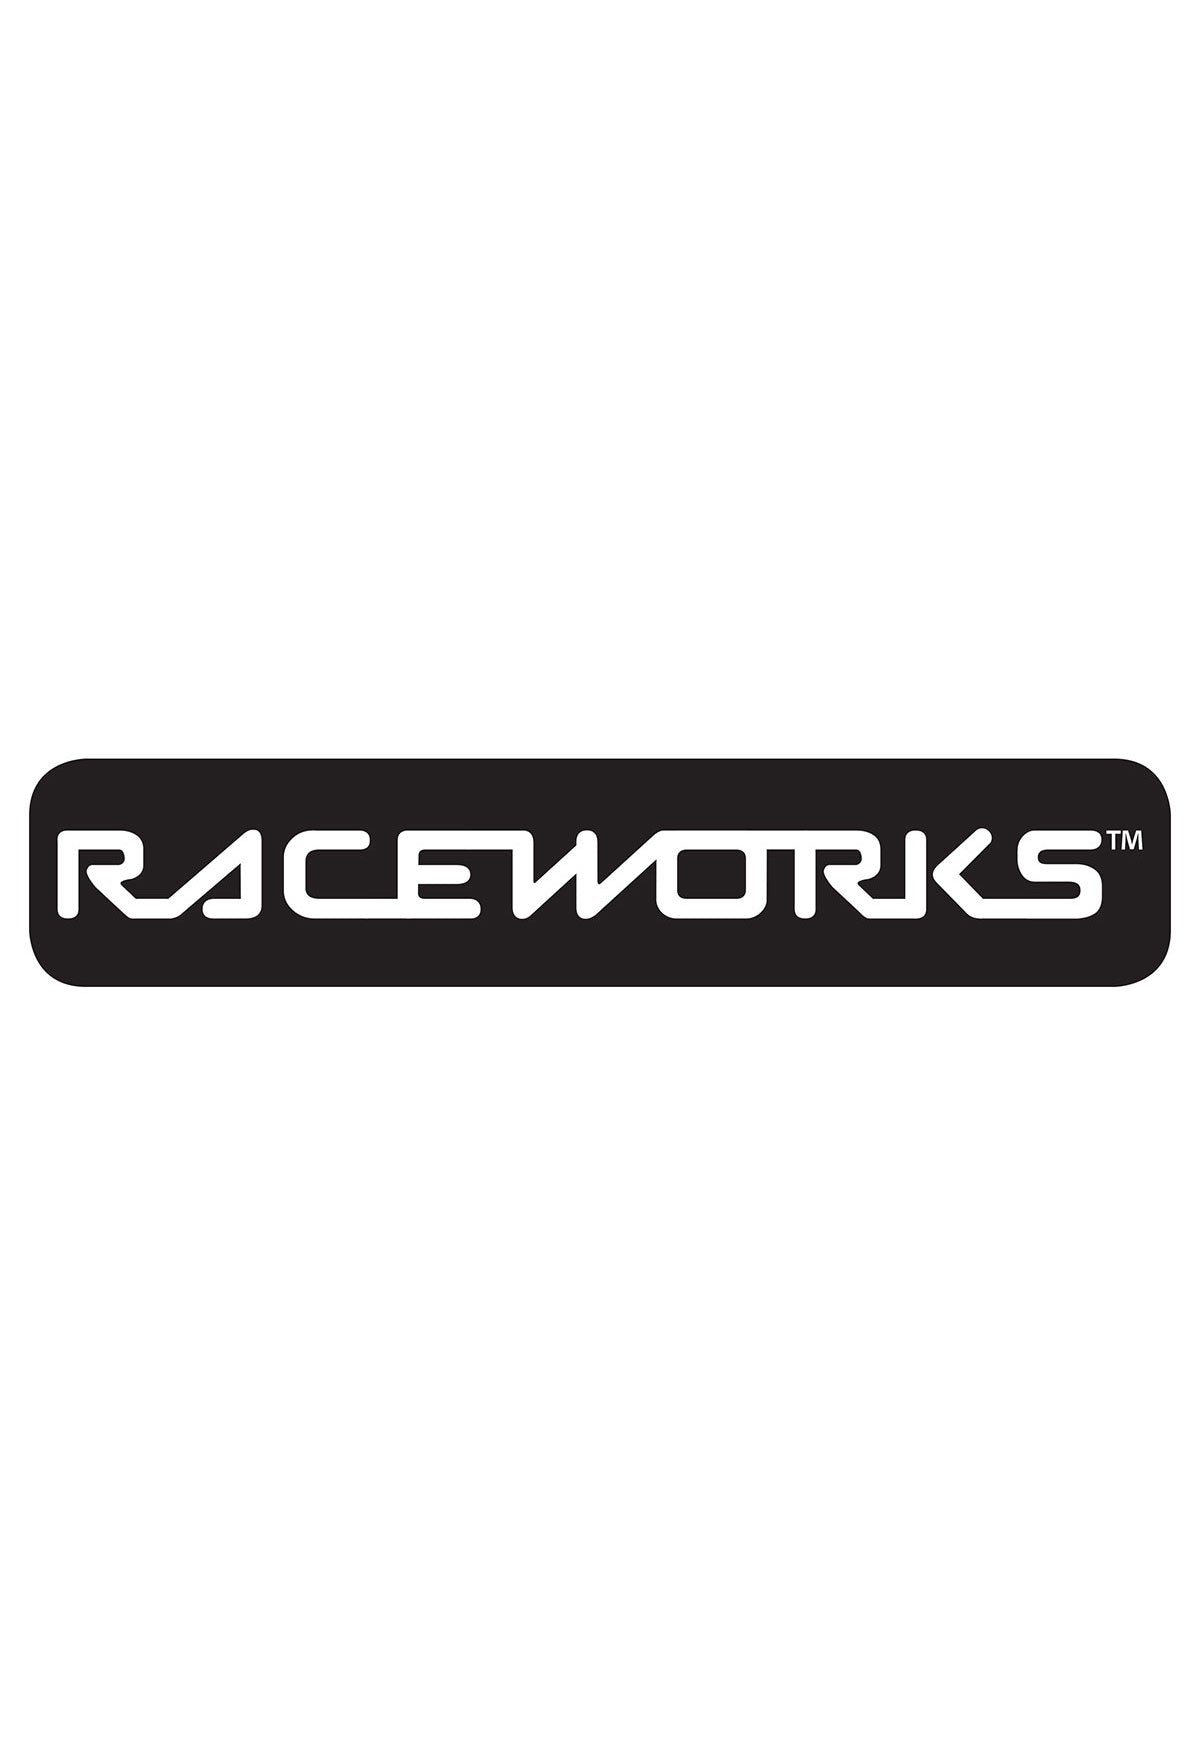 Raceworks Sticker B&W